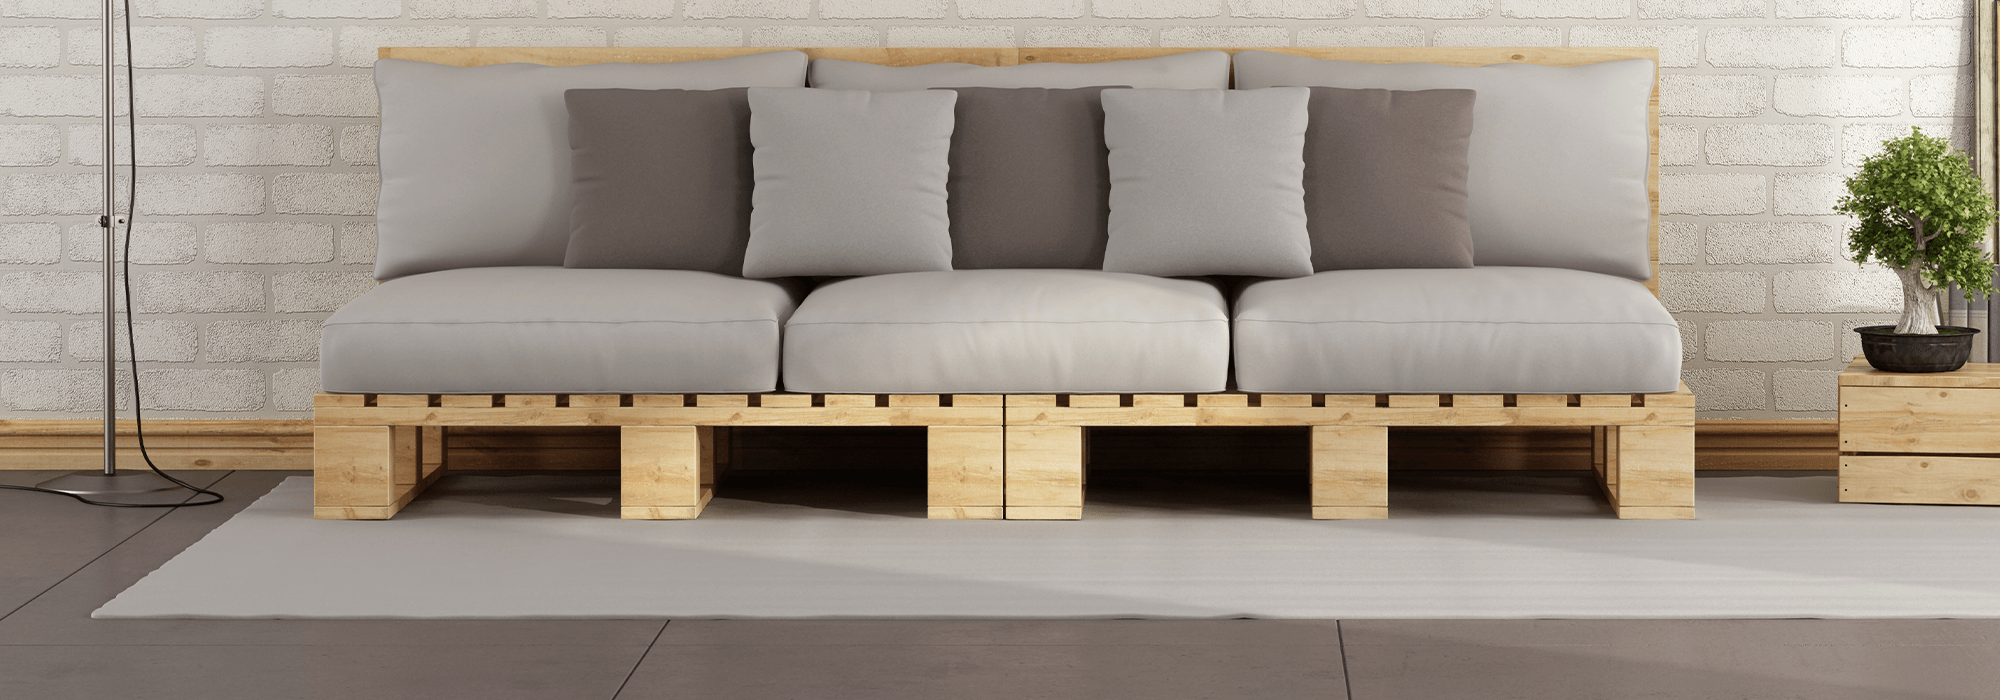 DIY : Comment un canapé en palettes de bois ? - Cdiscount